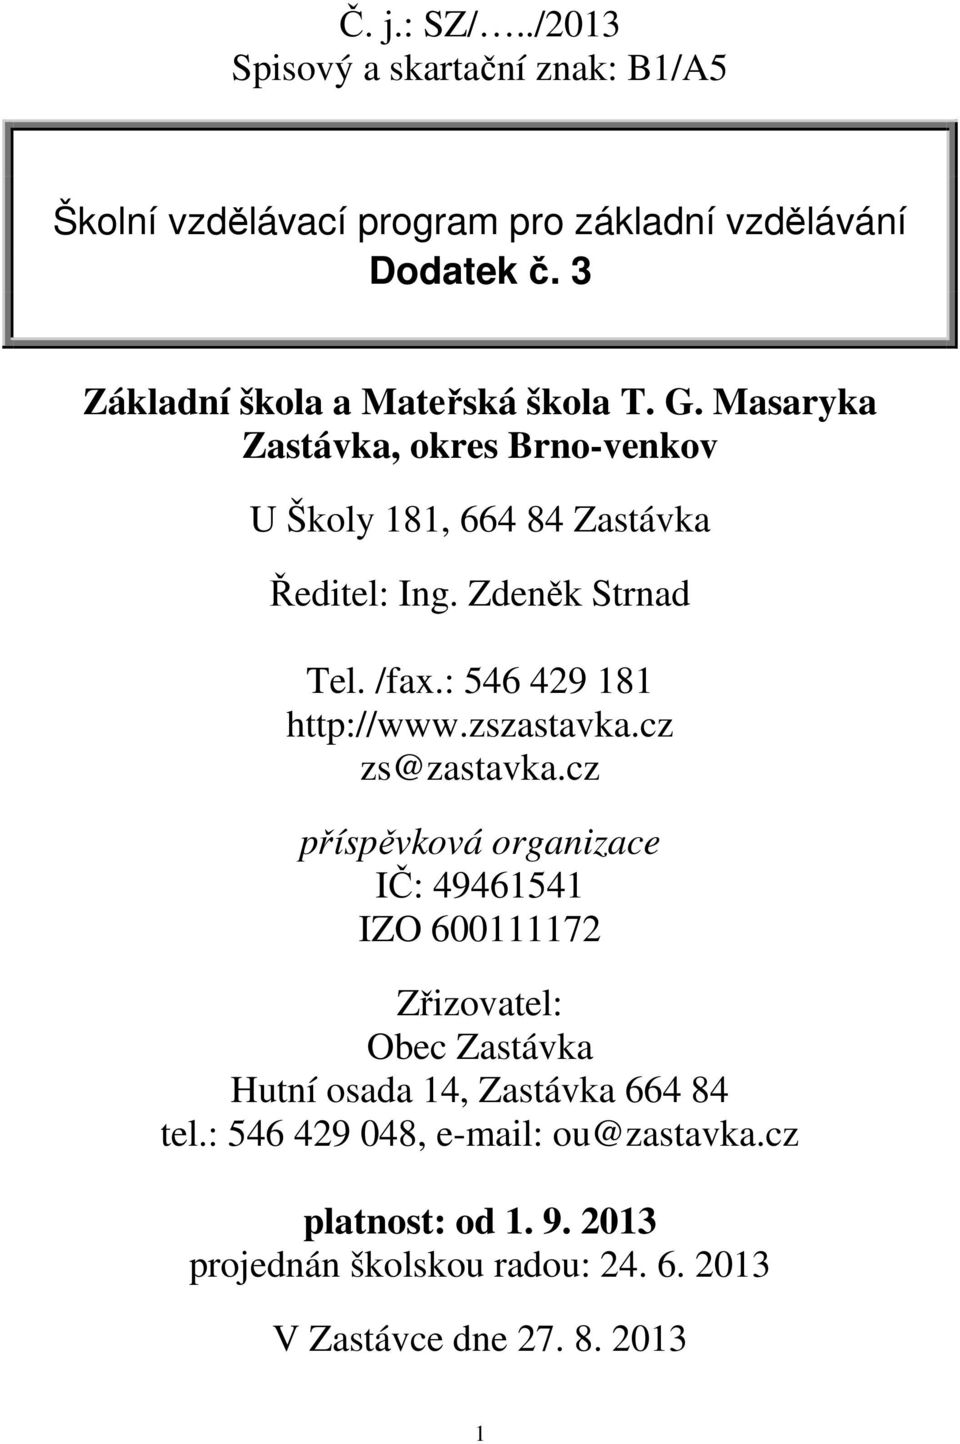 /fax.: 546 429 181 http://www.zszastavka.cz zs@zastavka.